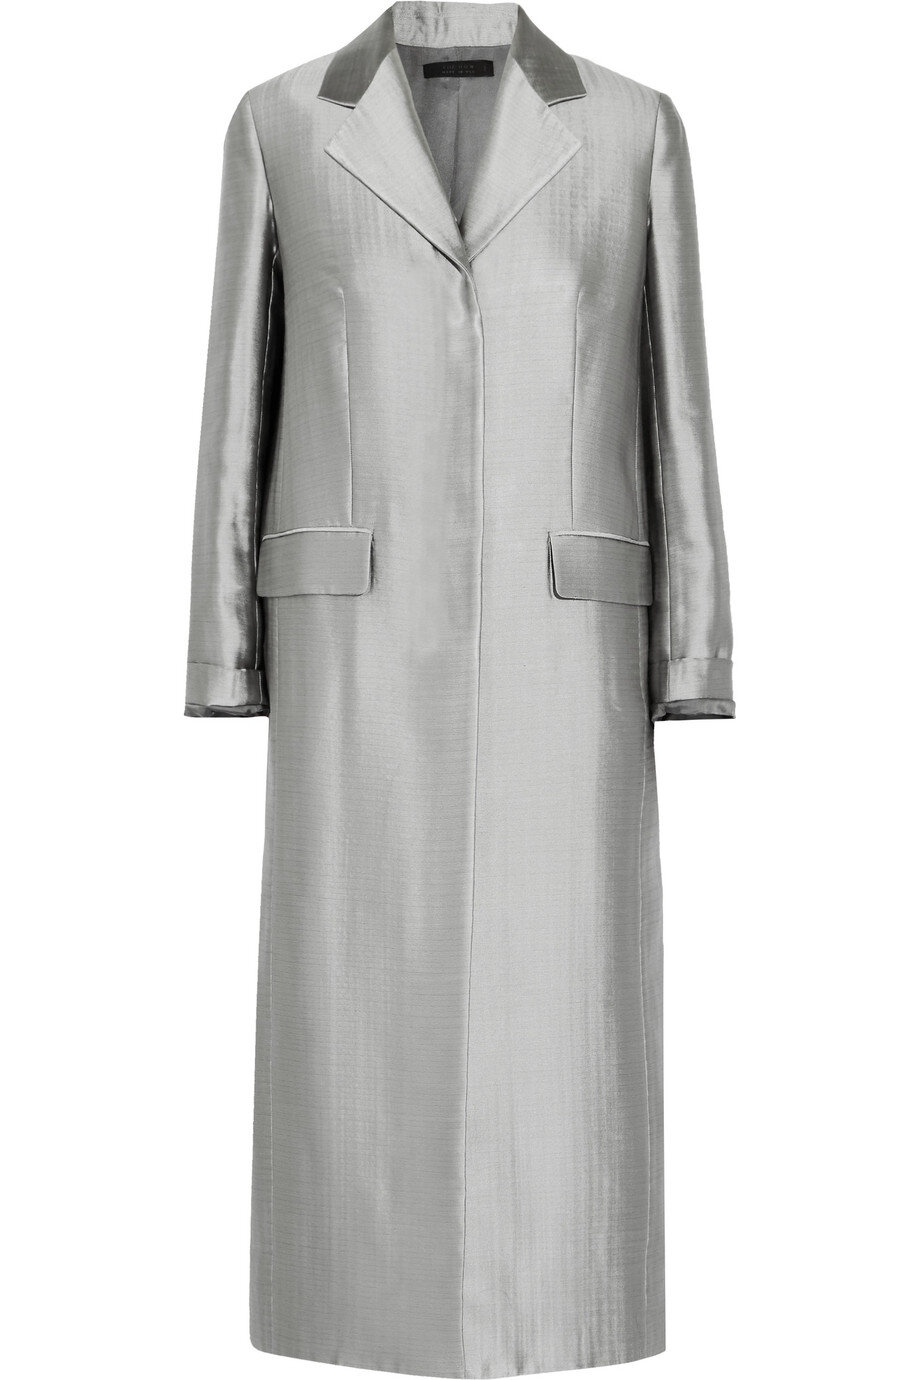 The Row Muedi Wool-Blend Coat in Silver.jpg